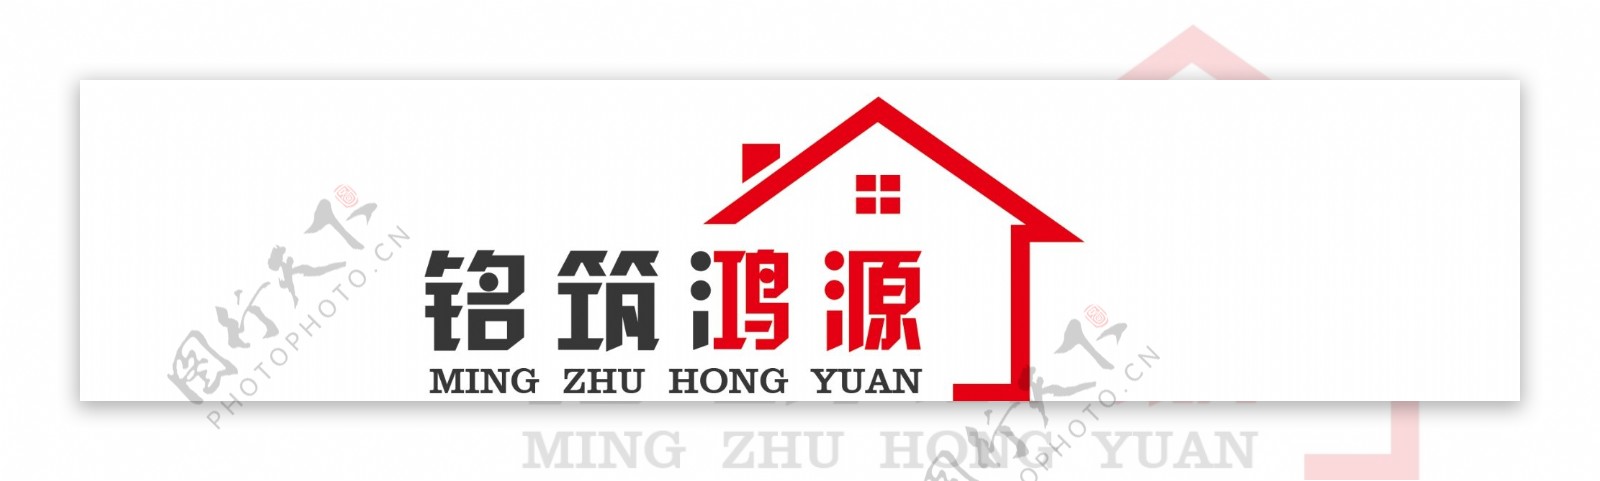 房产装修行业logo